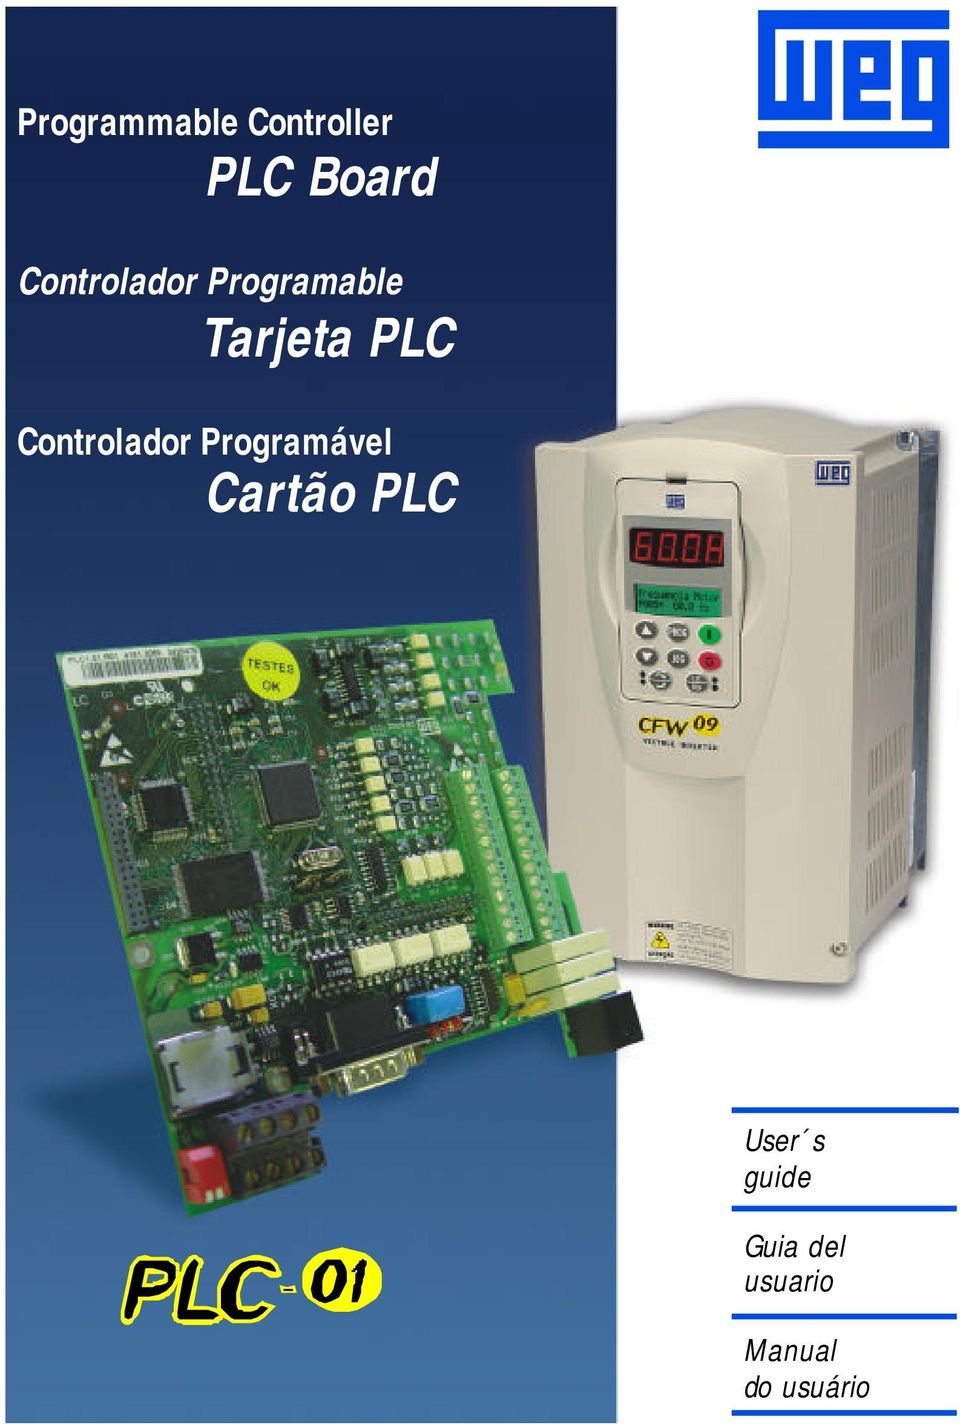 ControladorProgramável Cartão PLC